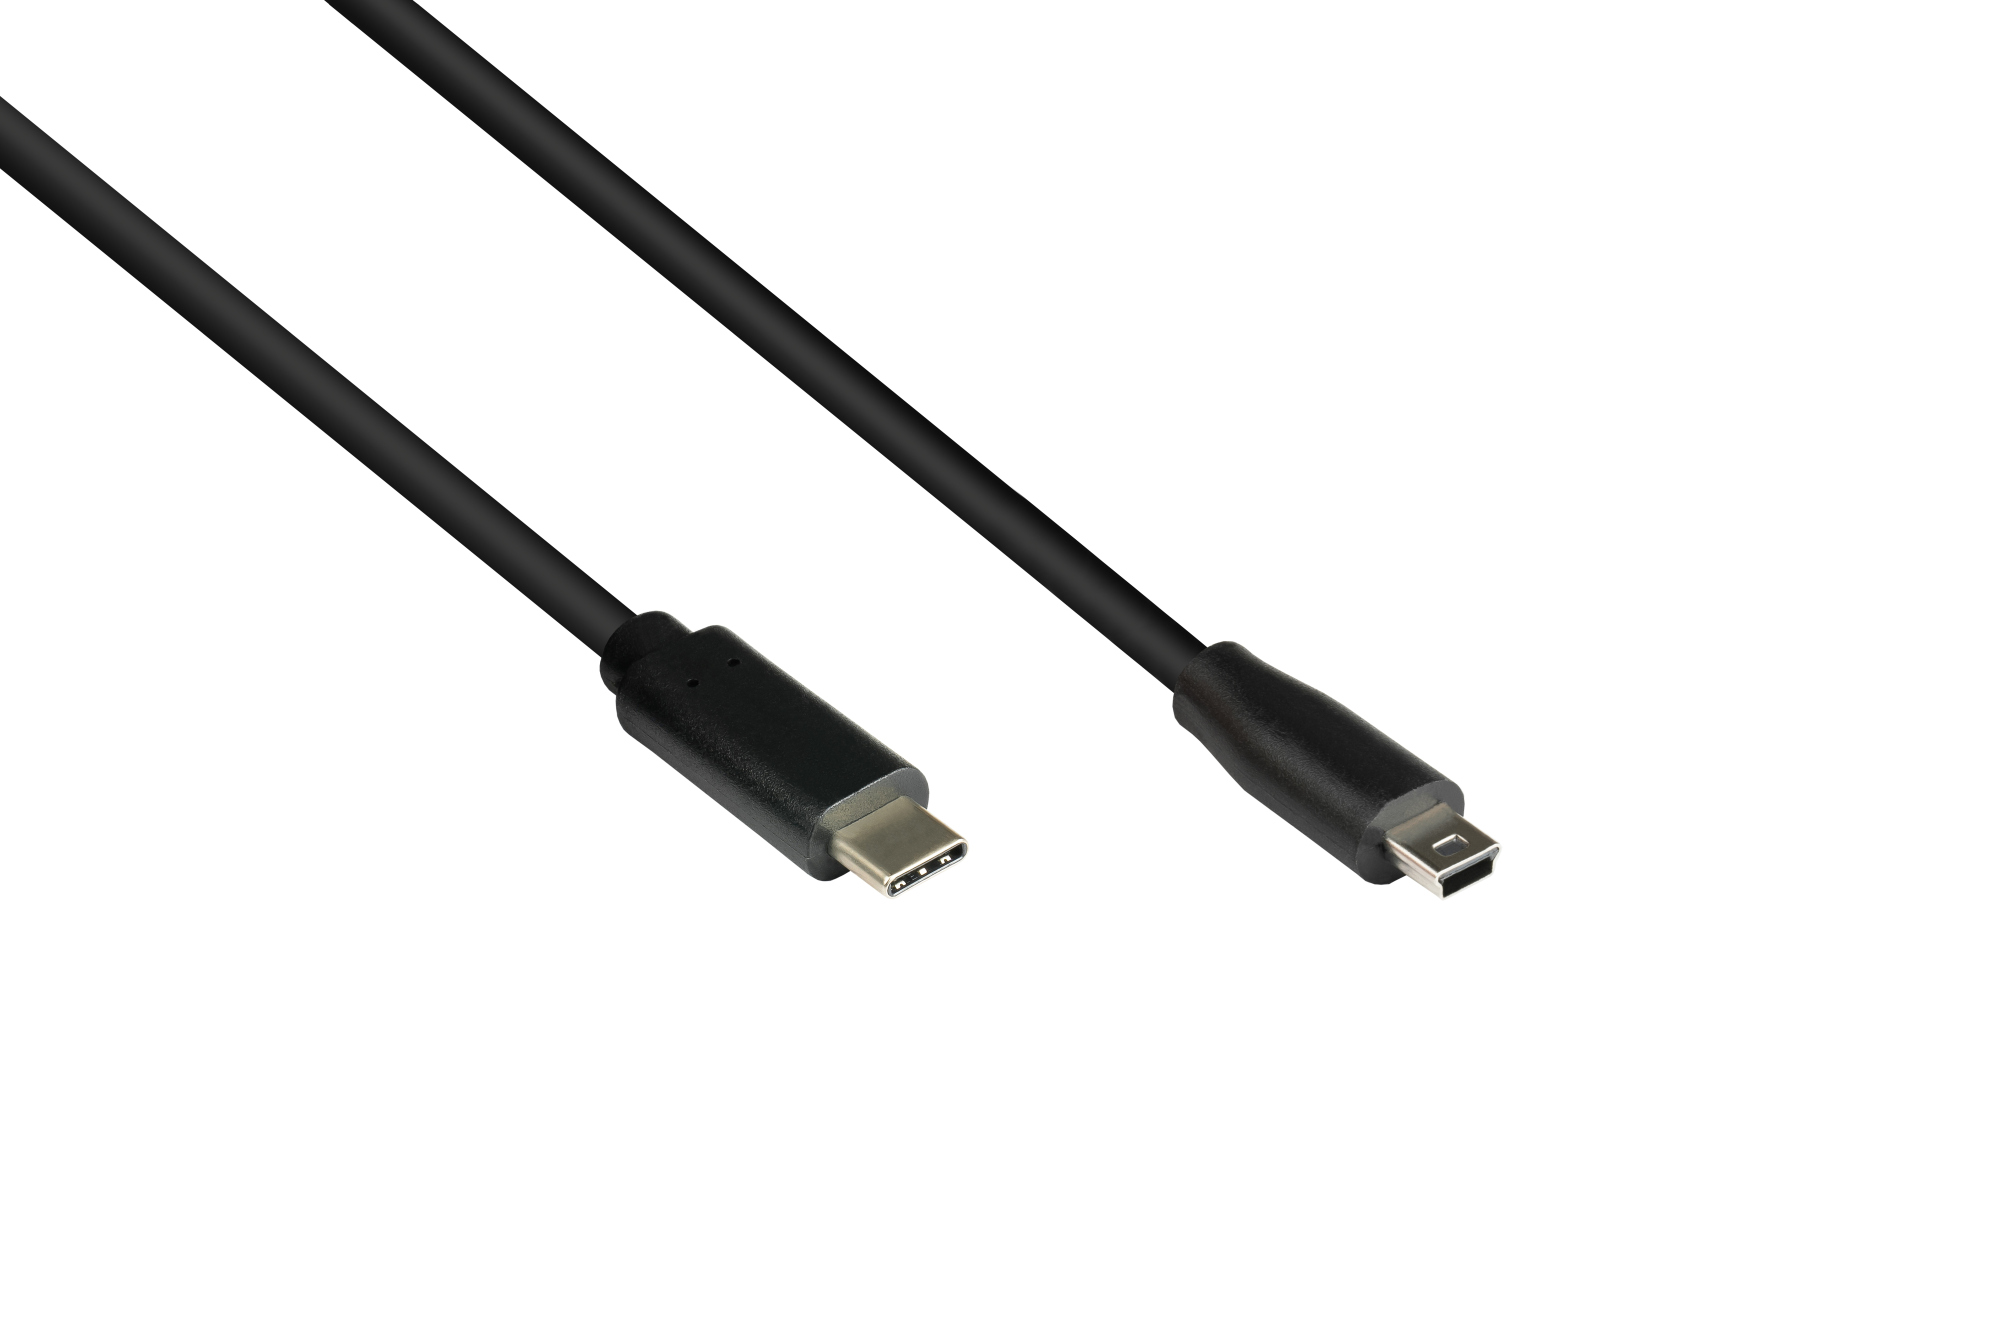 Anschlusskabel USB 2.0, USB-C™ Stecker an Stecker Mini B 5-pin, schwarz, 1,8m, Good Connections®